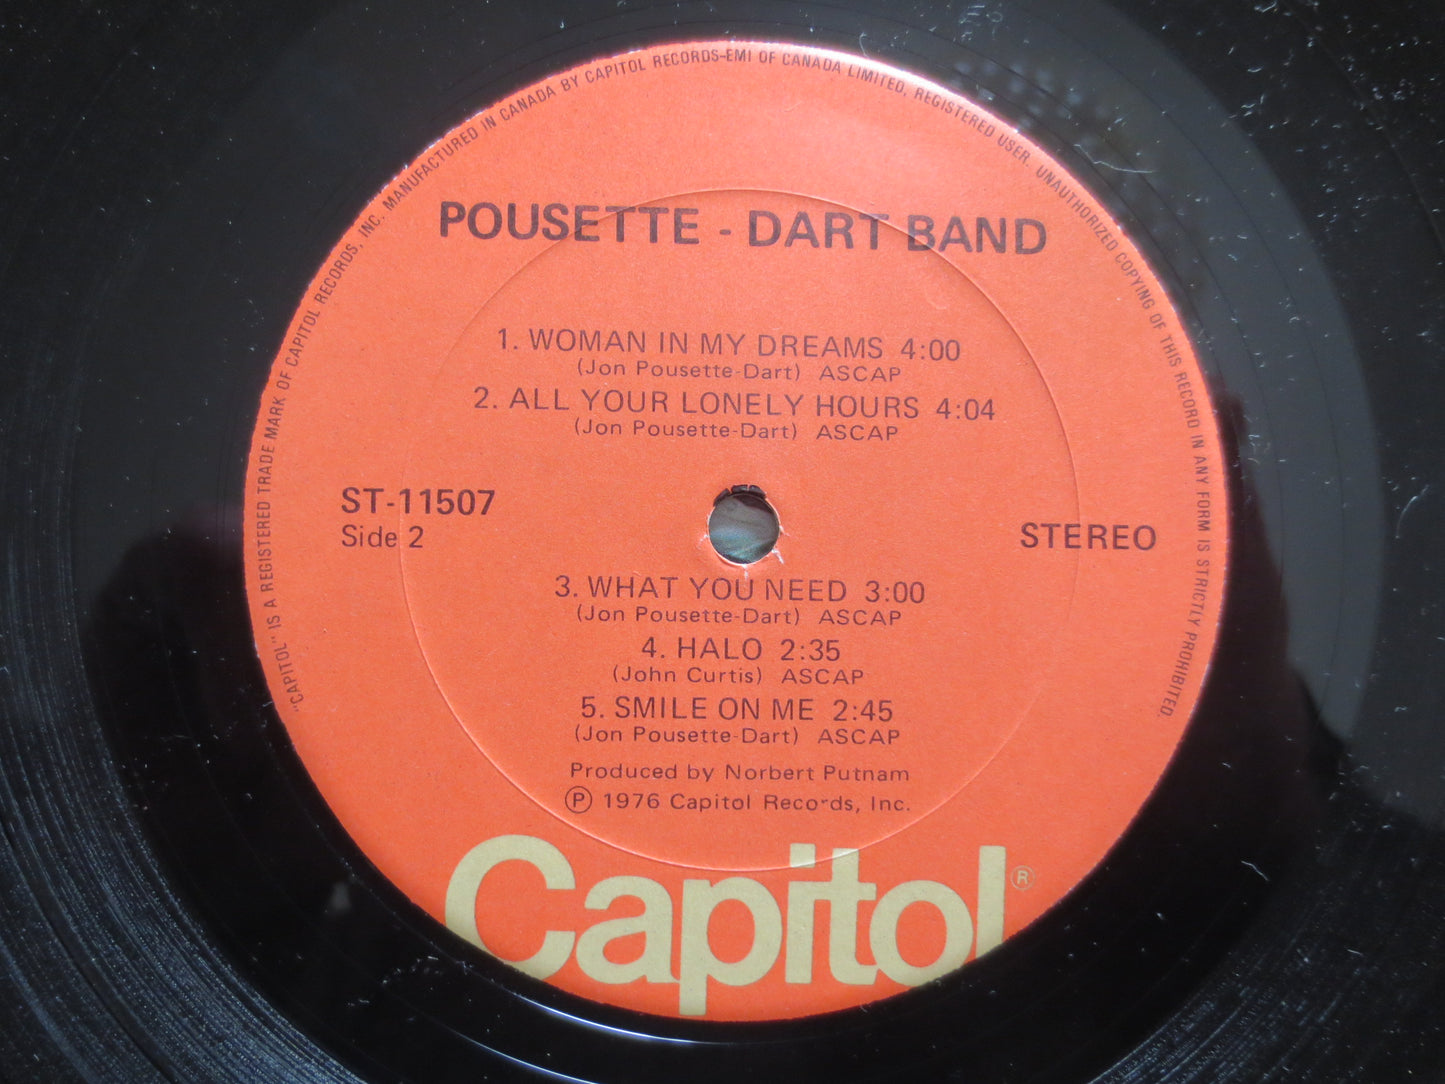 POUSETTE DART BAND, Rock Album, Soft Rock Album, Rock Vinyl, Rock Record, Vintage Vinyl, Vintage Album, Vinyl, 1976 Records